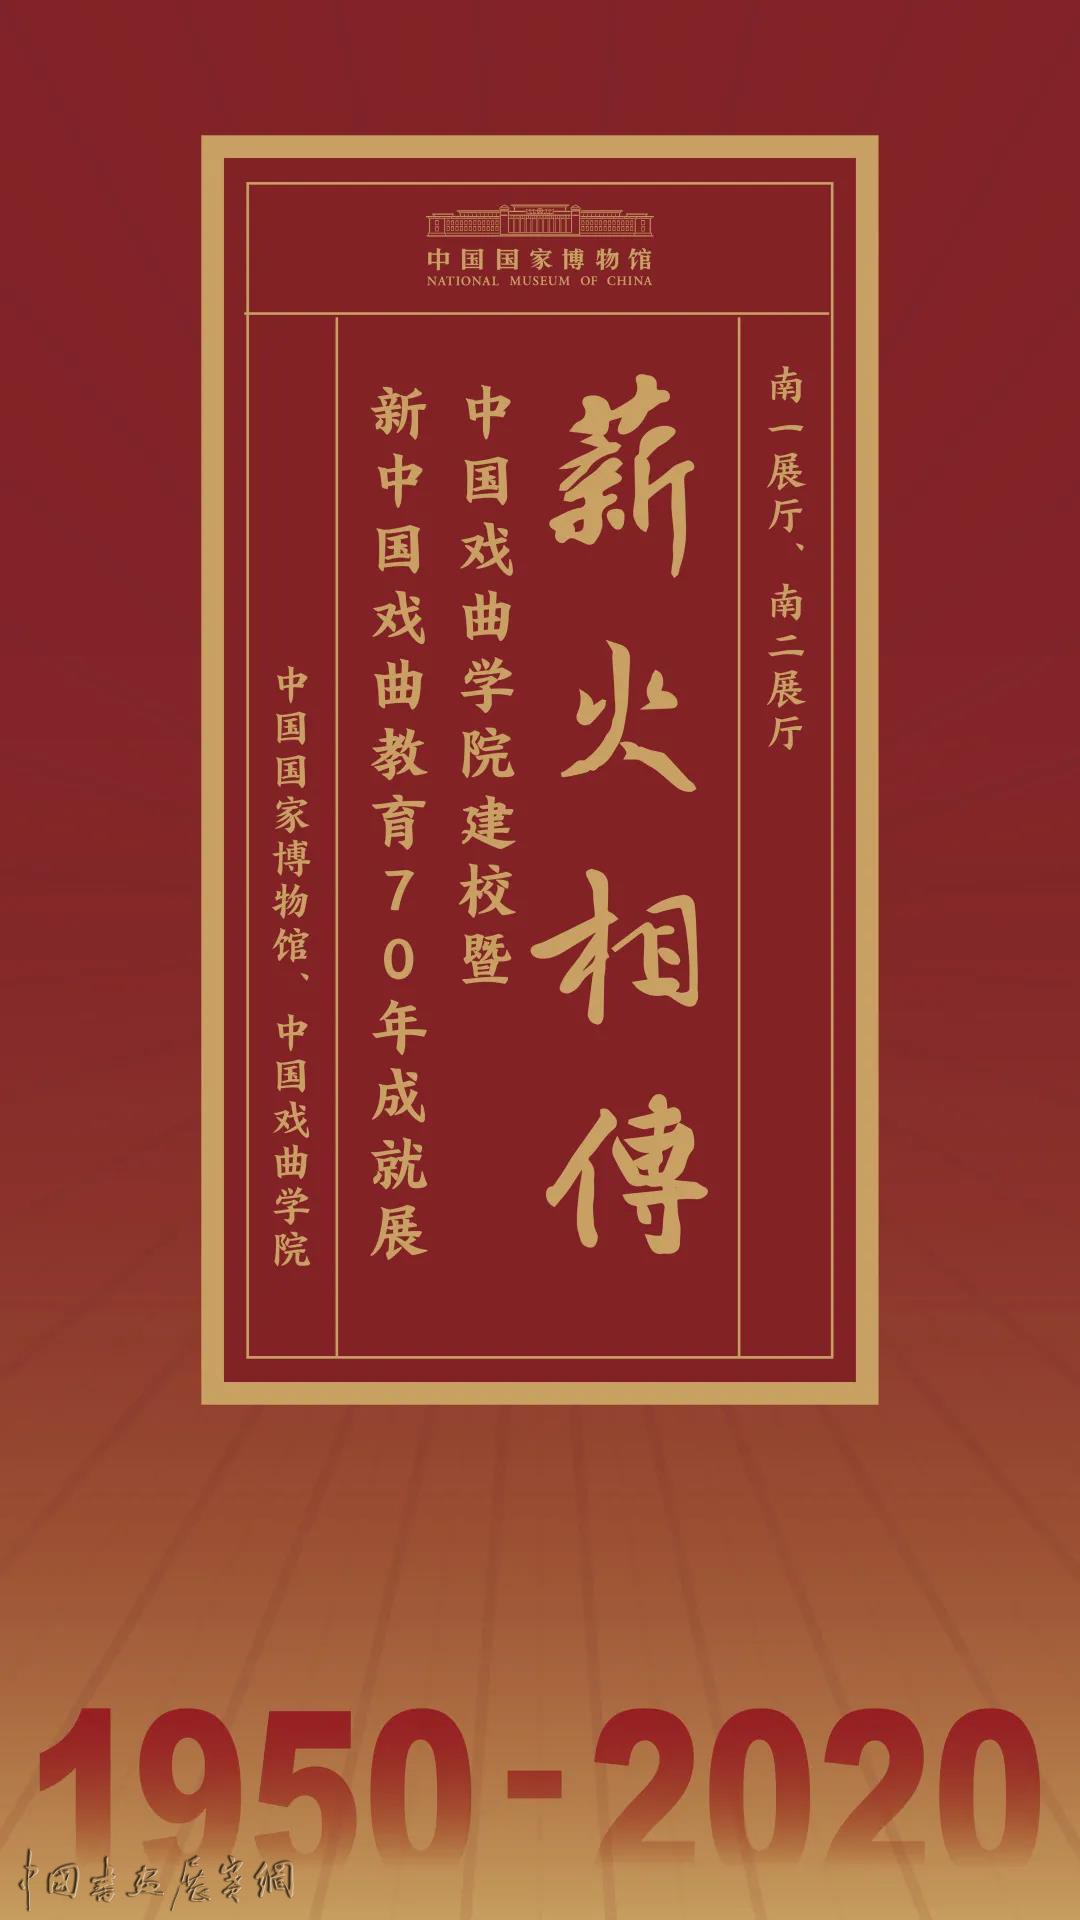 国博首博连推戏曲展，萧长华穿过的花褶子、马连良写下的手札